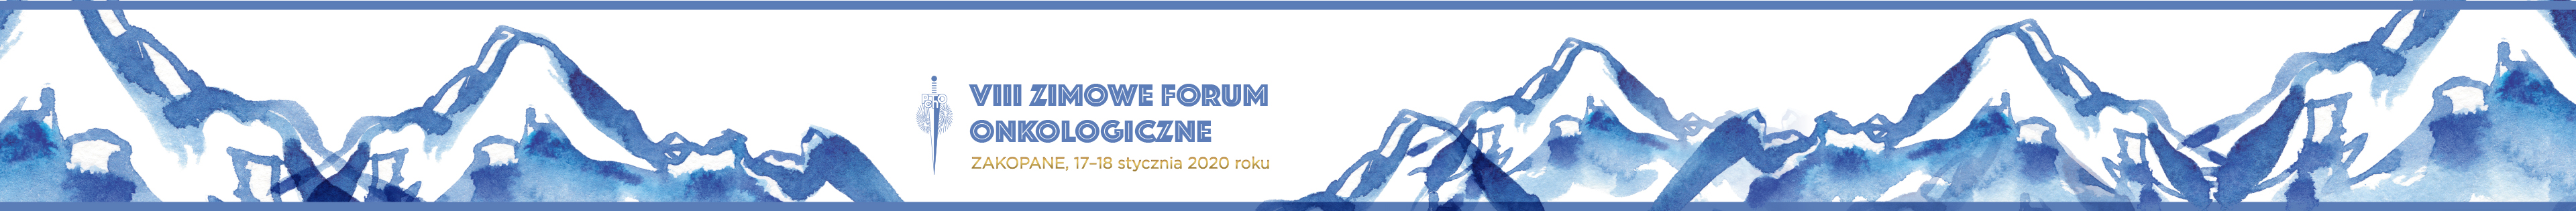 VIII Zimowe Forum Onkologiczne - Zakopane 2020